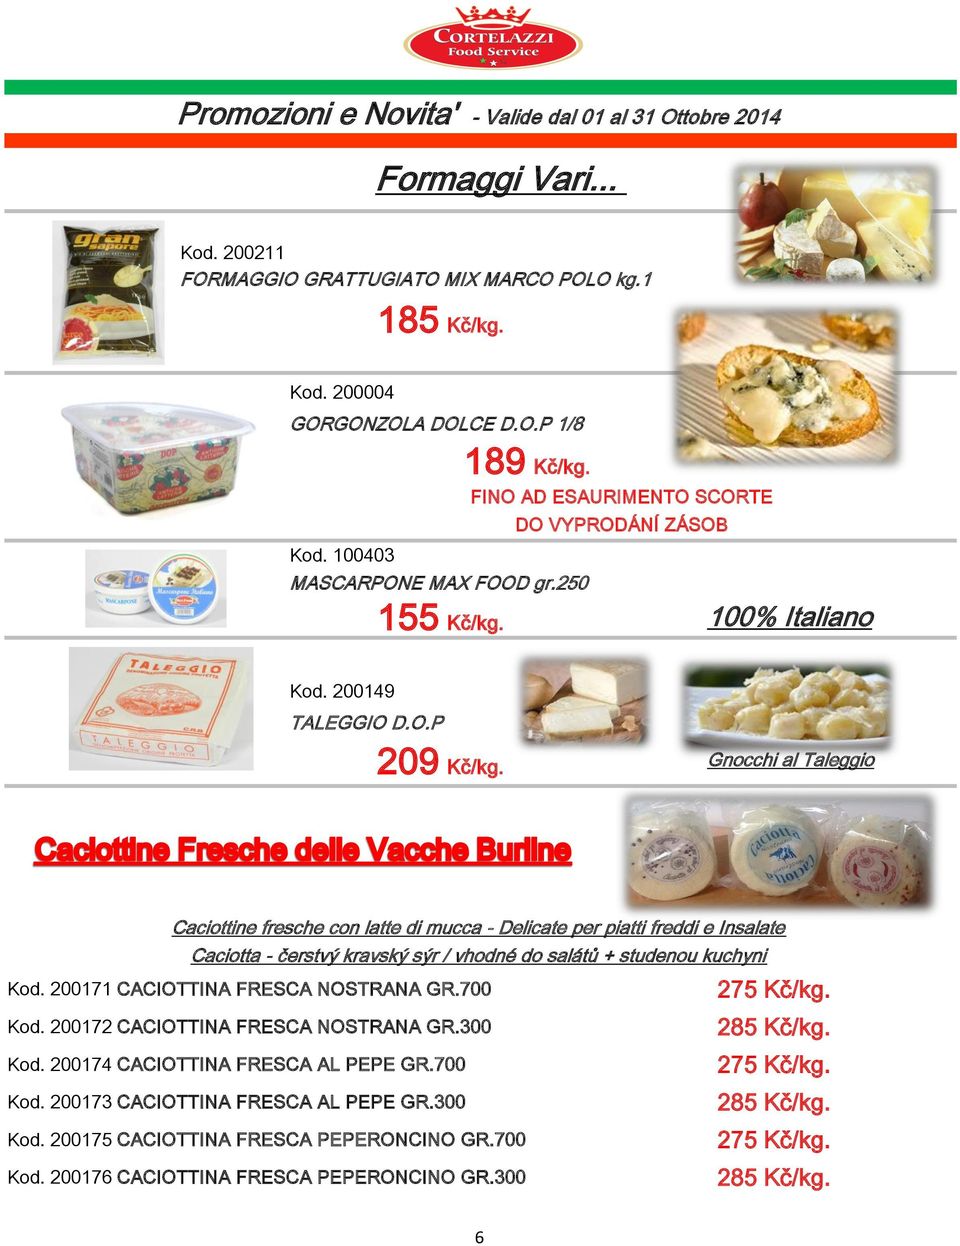 Gnocchi al Taleggio Caciottine fresche con latte di mucca - Delicate per piatti freddi e Insalate Caciotta - čerstvý kravský sýr / vhodné do salátů + studenou kuchyni Kod.